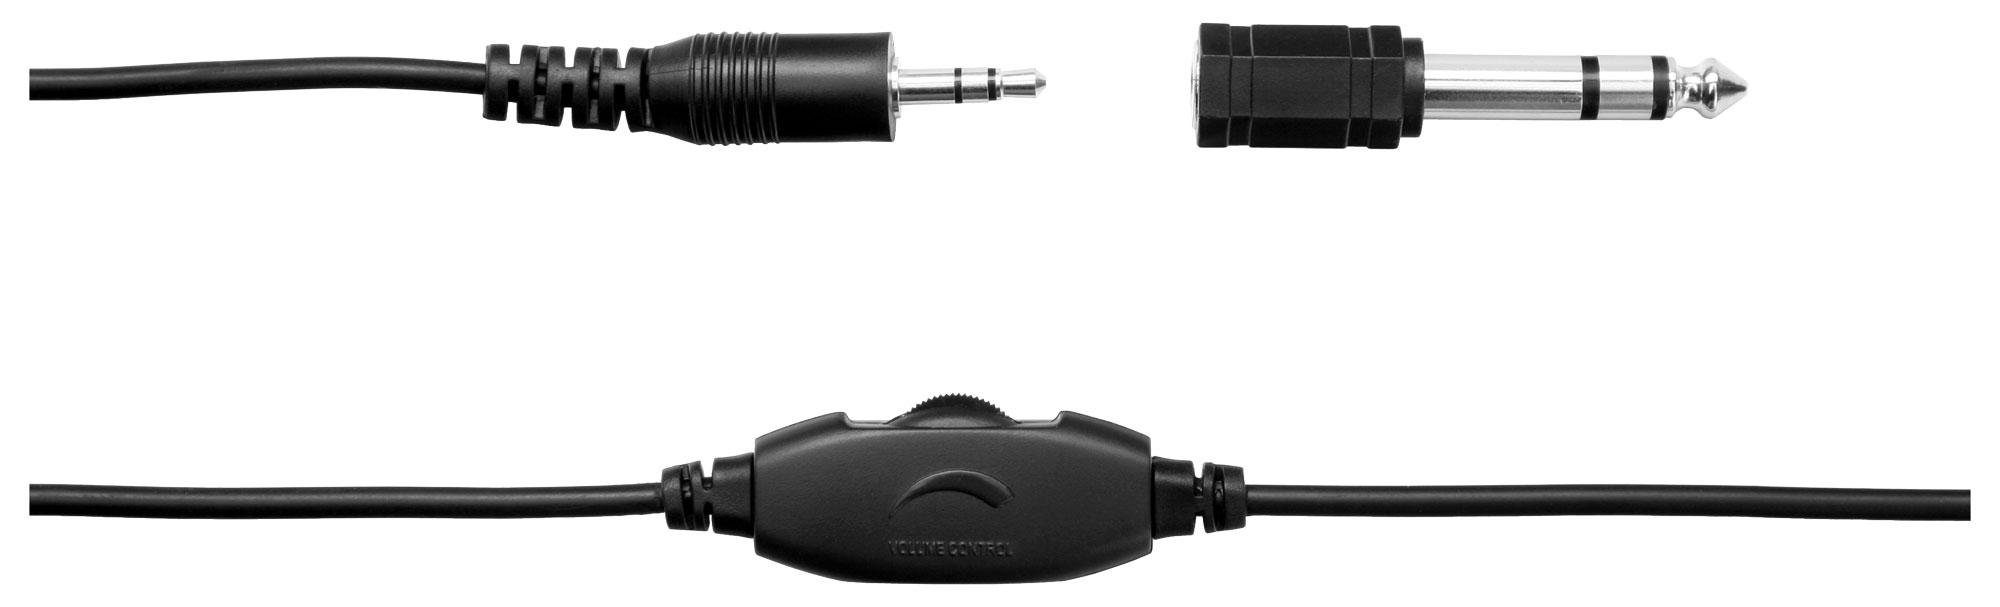 Classic und integriertem Over-Ear-Kopfhörer KH-238 Cantabile Aktiv-Bass) Lautstärkeregelung (Mit